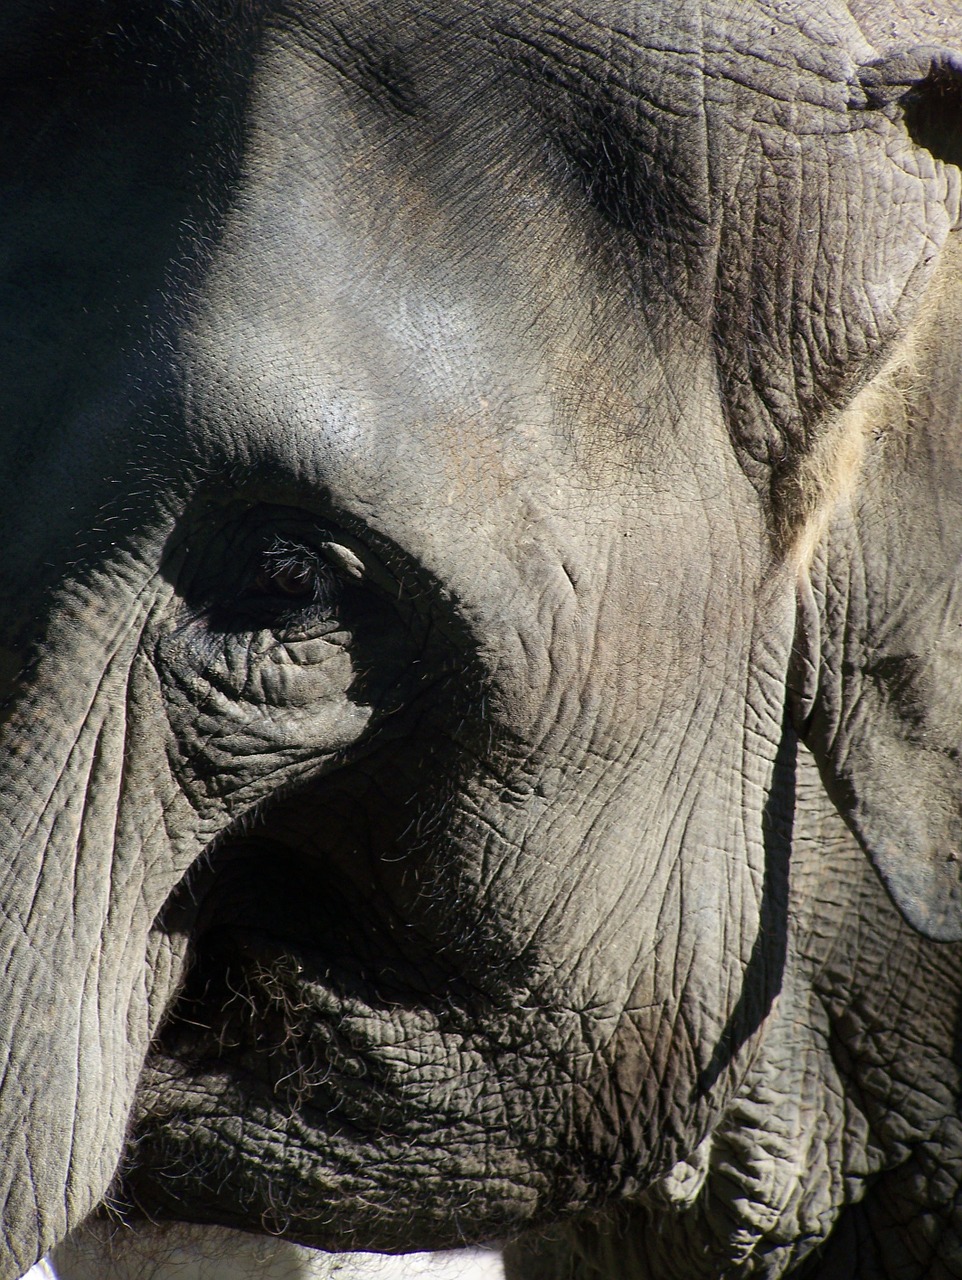 Image of elephant trunk